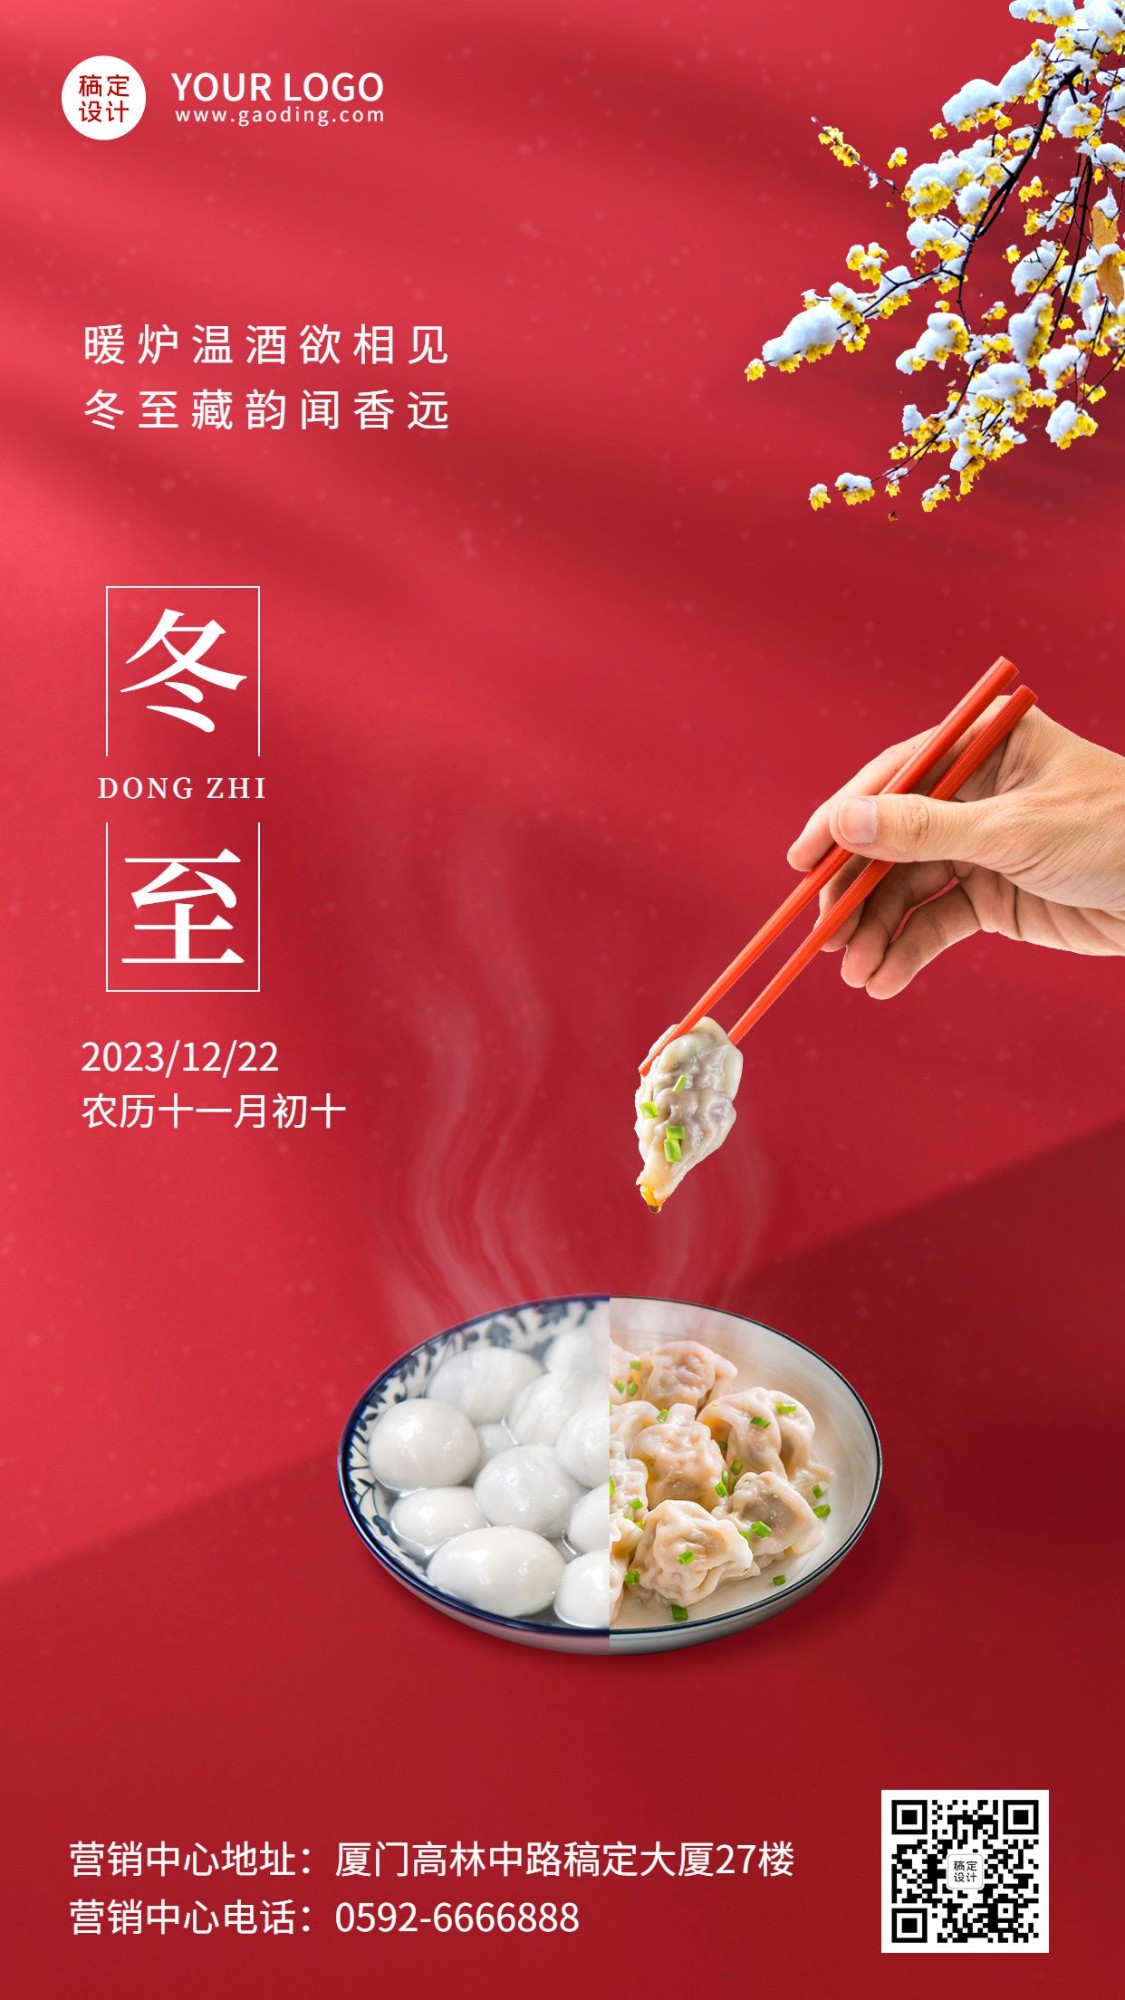 冬至节气祝福汤圆饺子合成手机海报预览效果